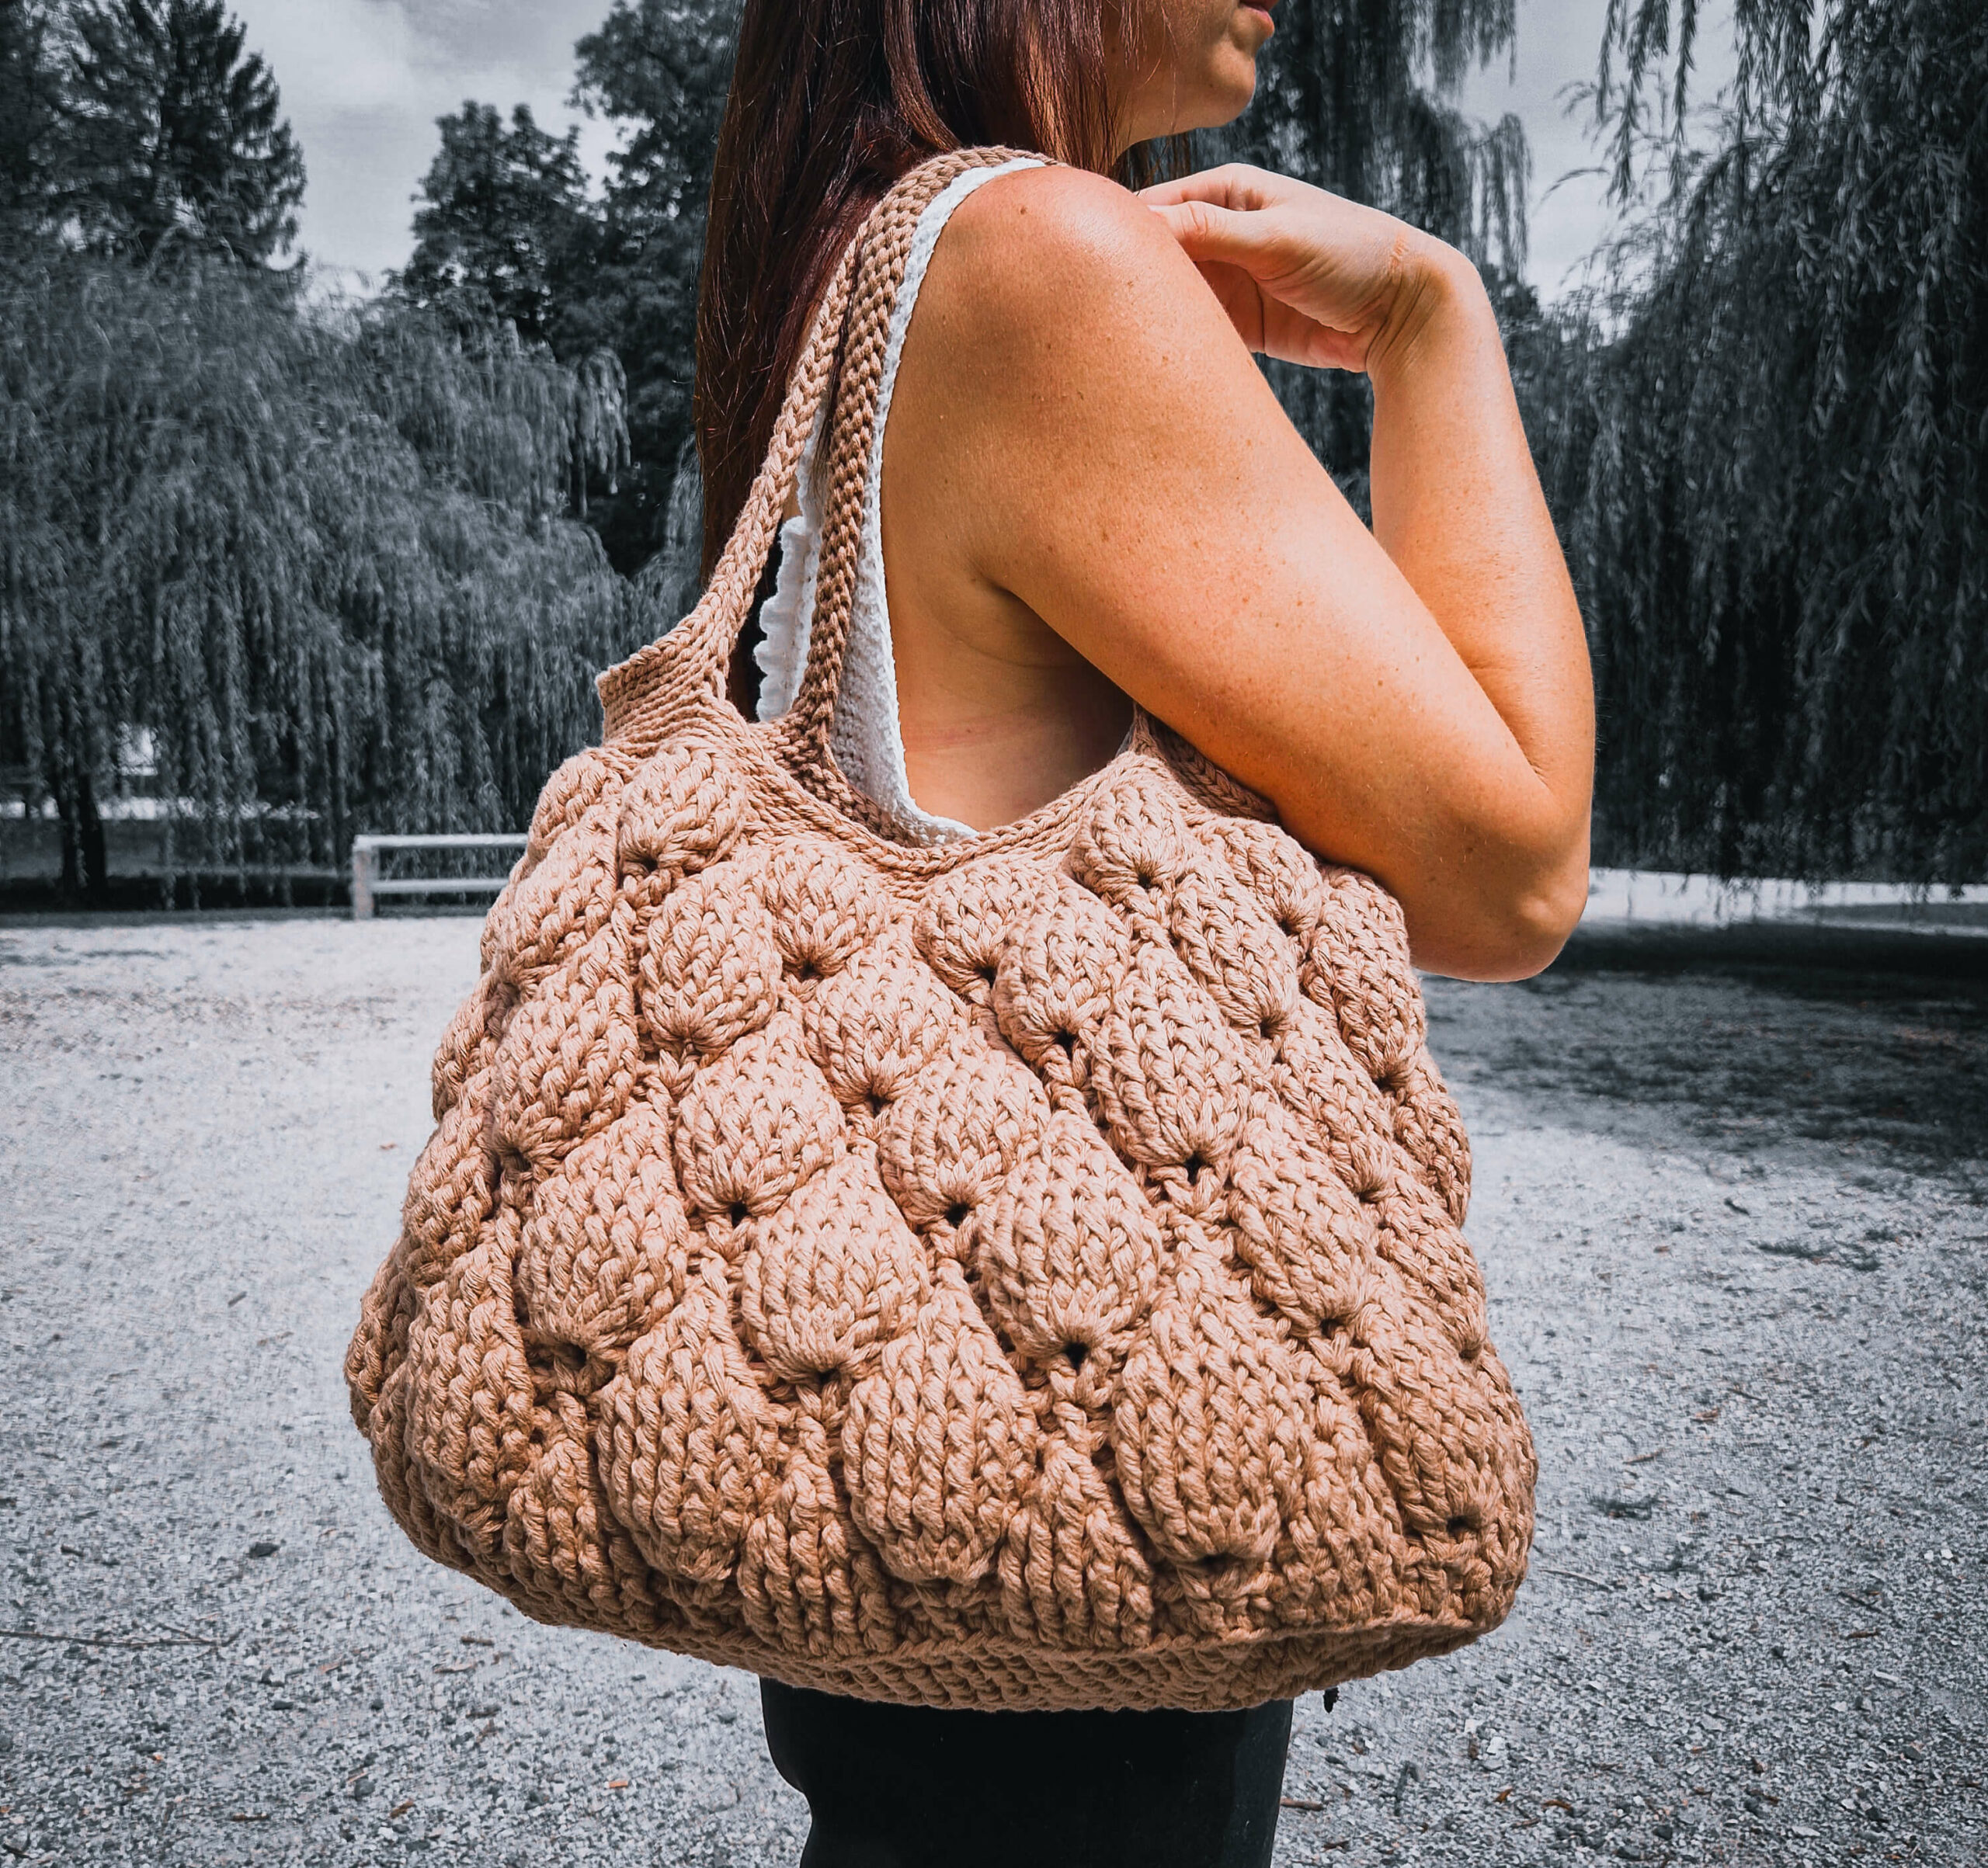 How to Crochet a Figs Handbag